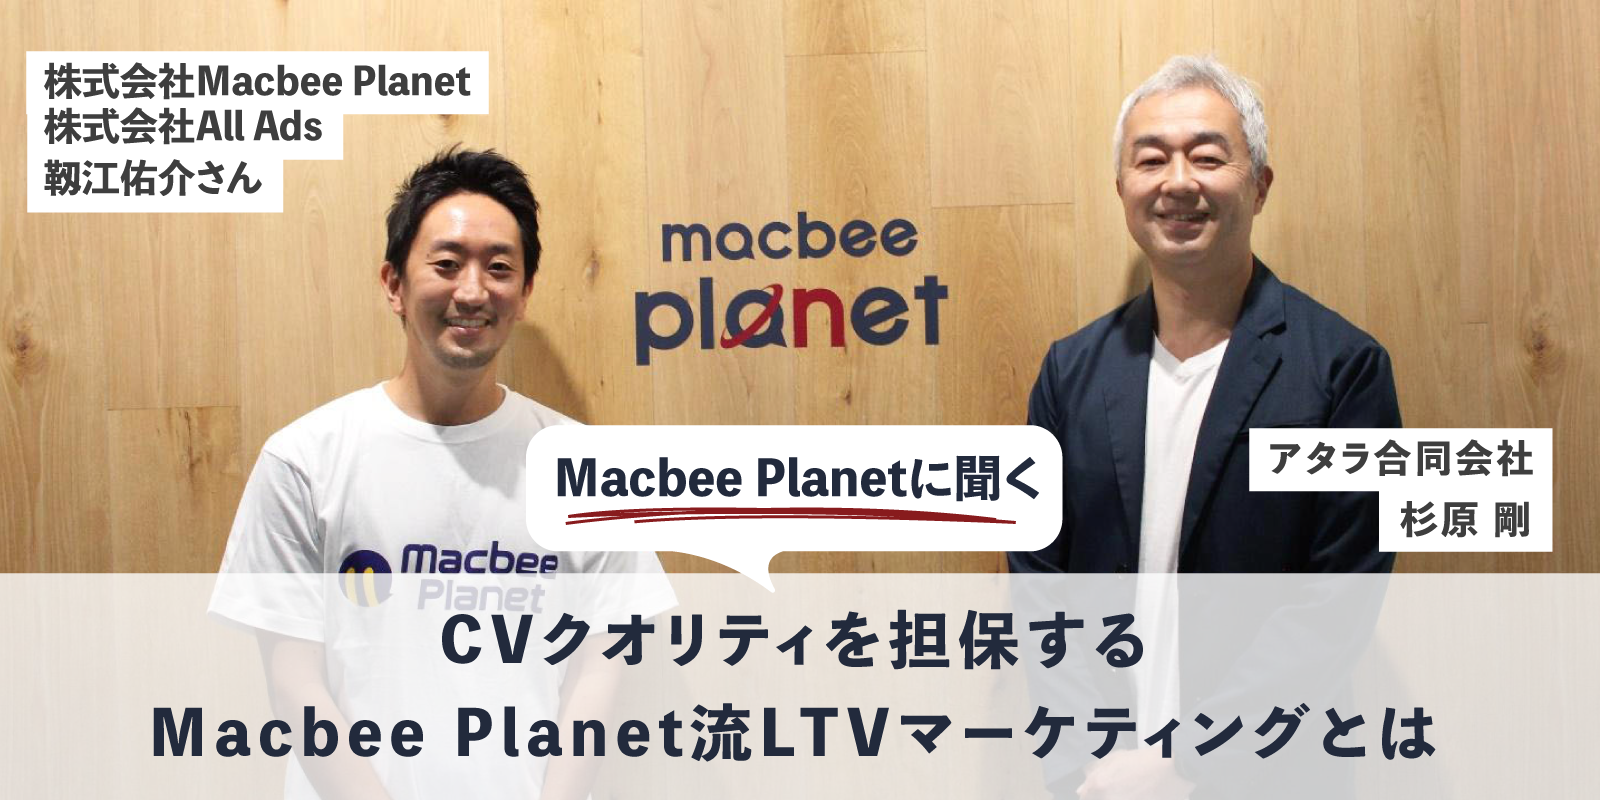 CVクオリティを担保するMacbee Planet流LTVマーケティングとは